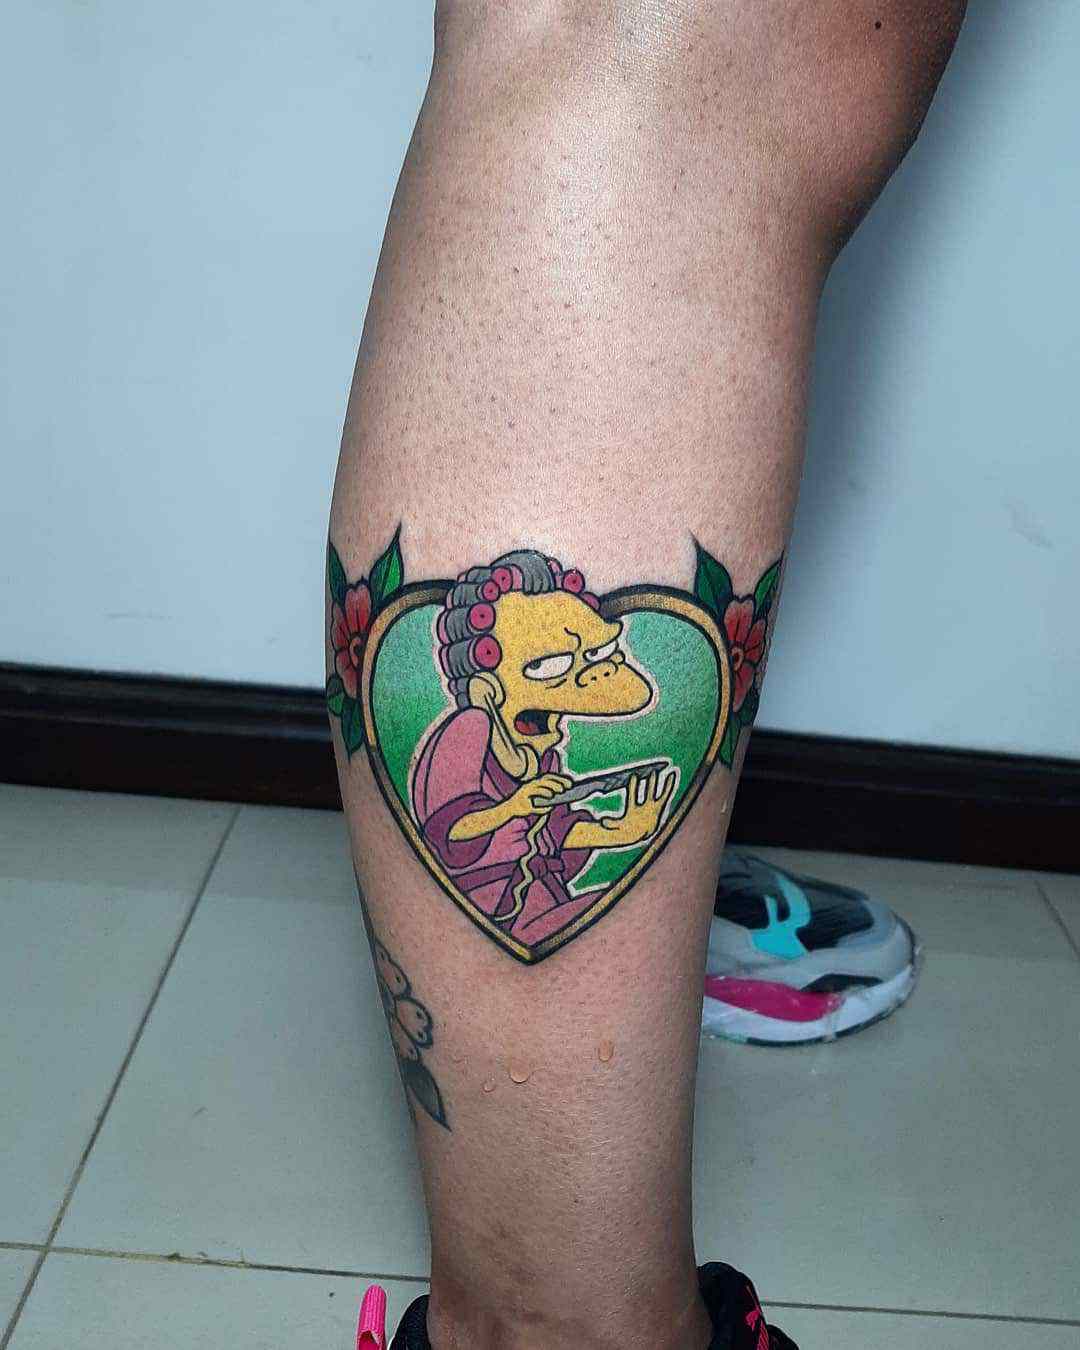 Moe Szyslak - tattoo based on The Simpsons